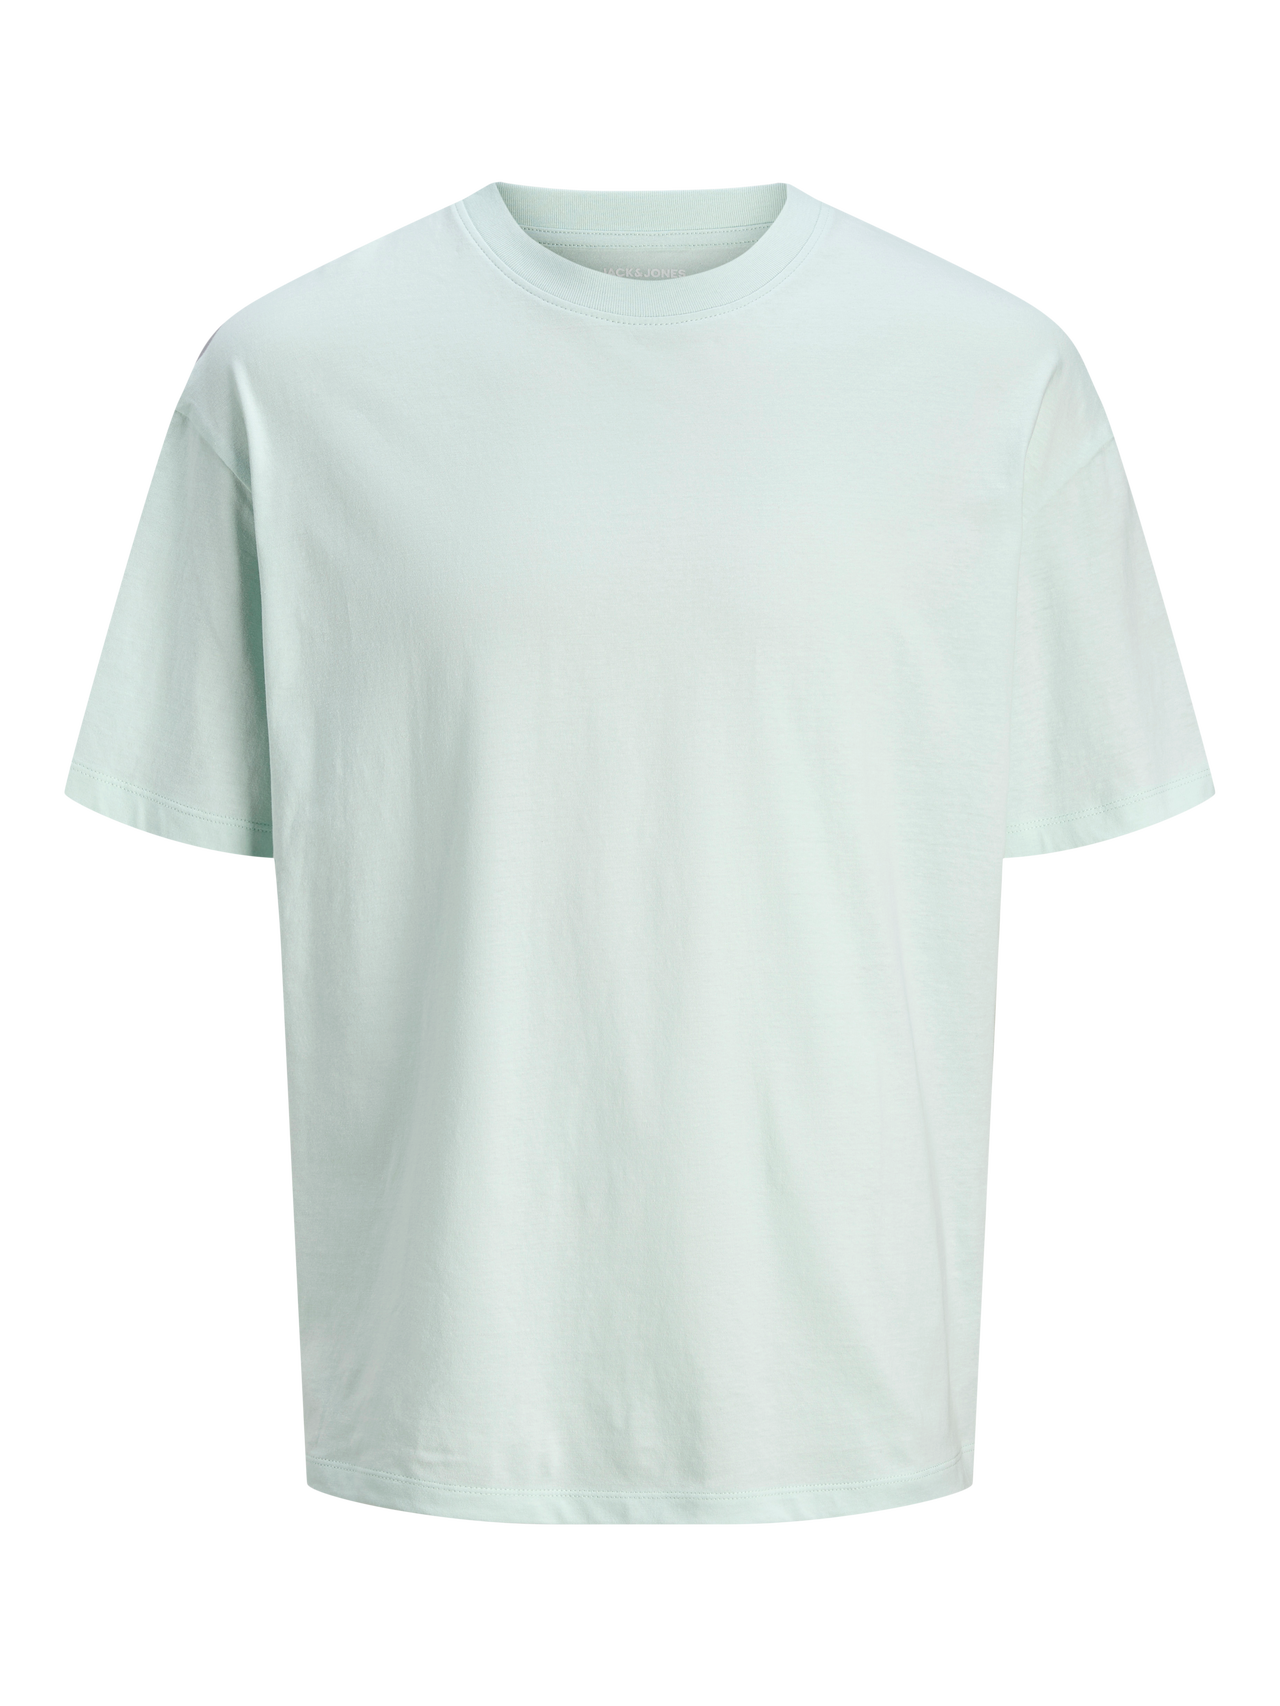 Jack & Jones Plus Size Camiseta Liso -Skylight - 12250623